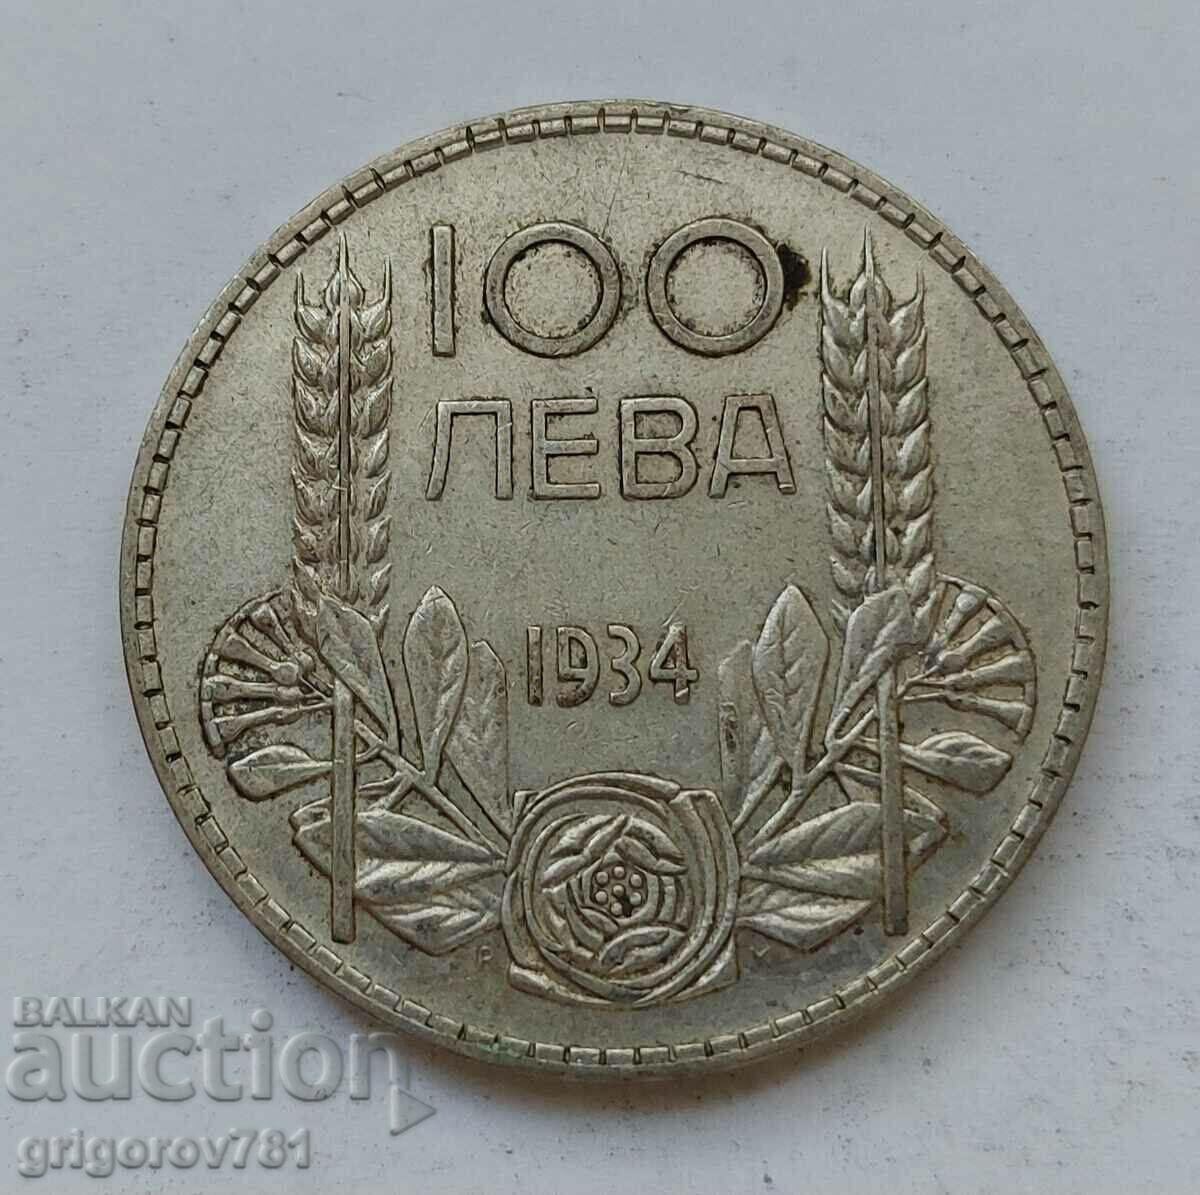 100 лева сребро България 1934 -  сребърна монета #160